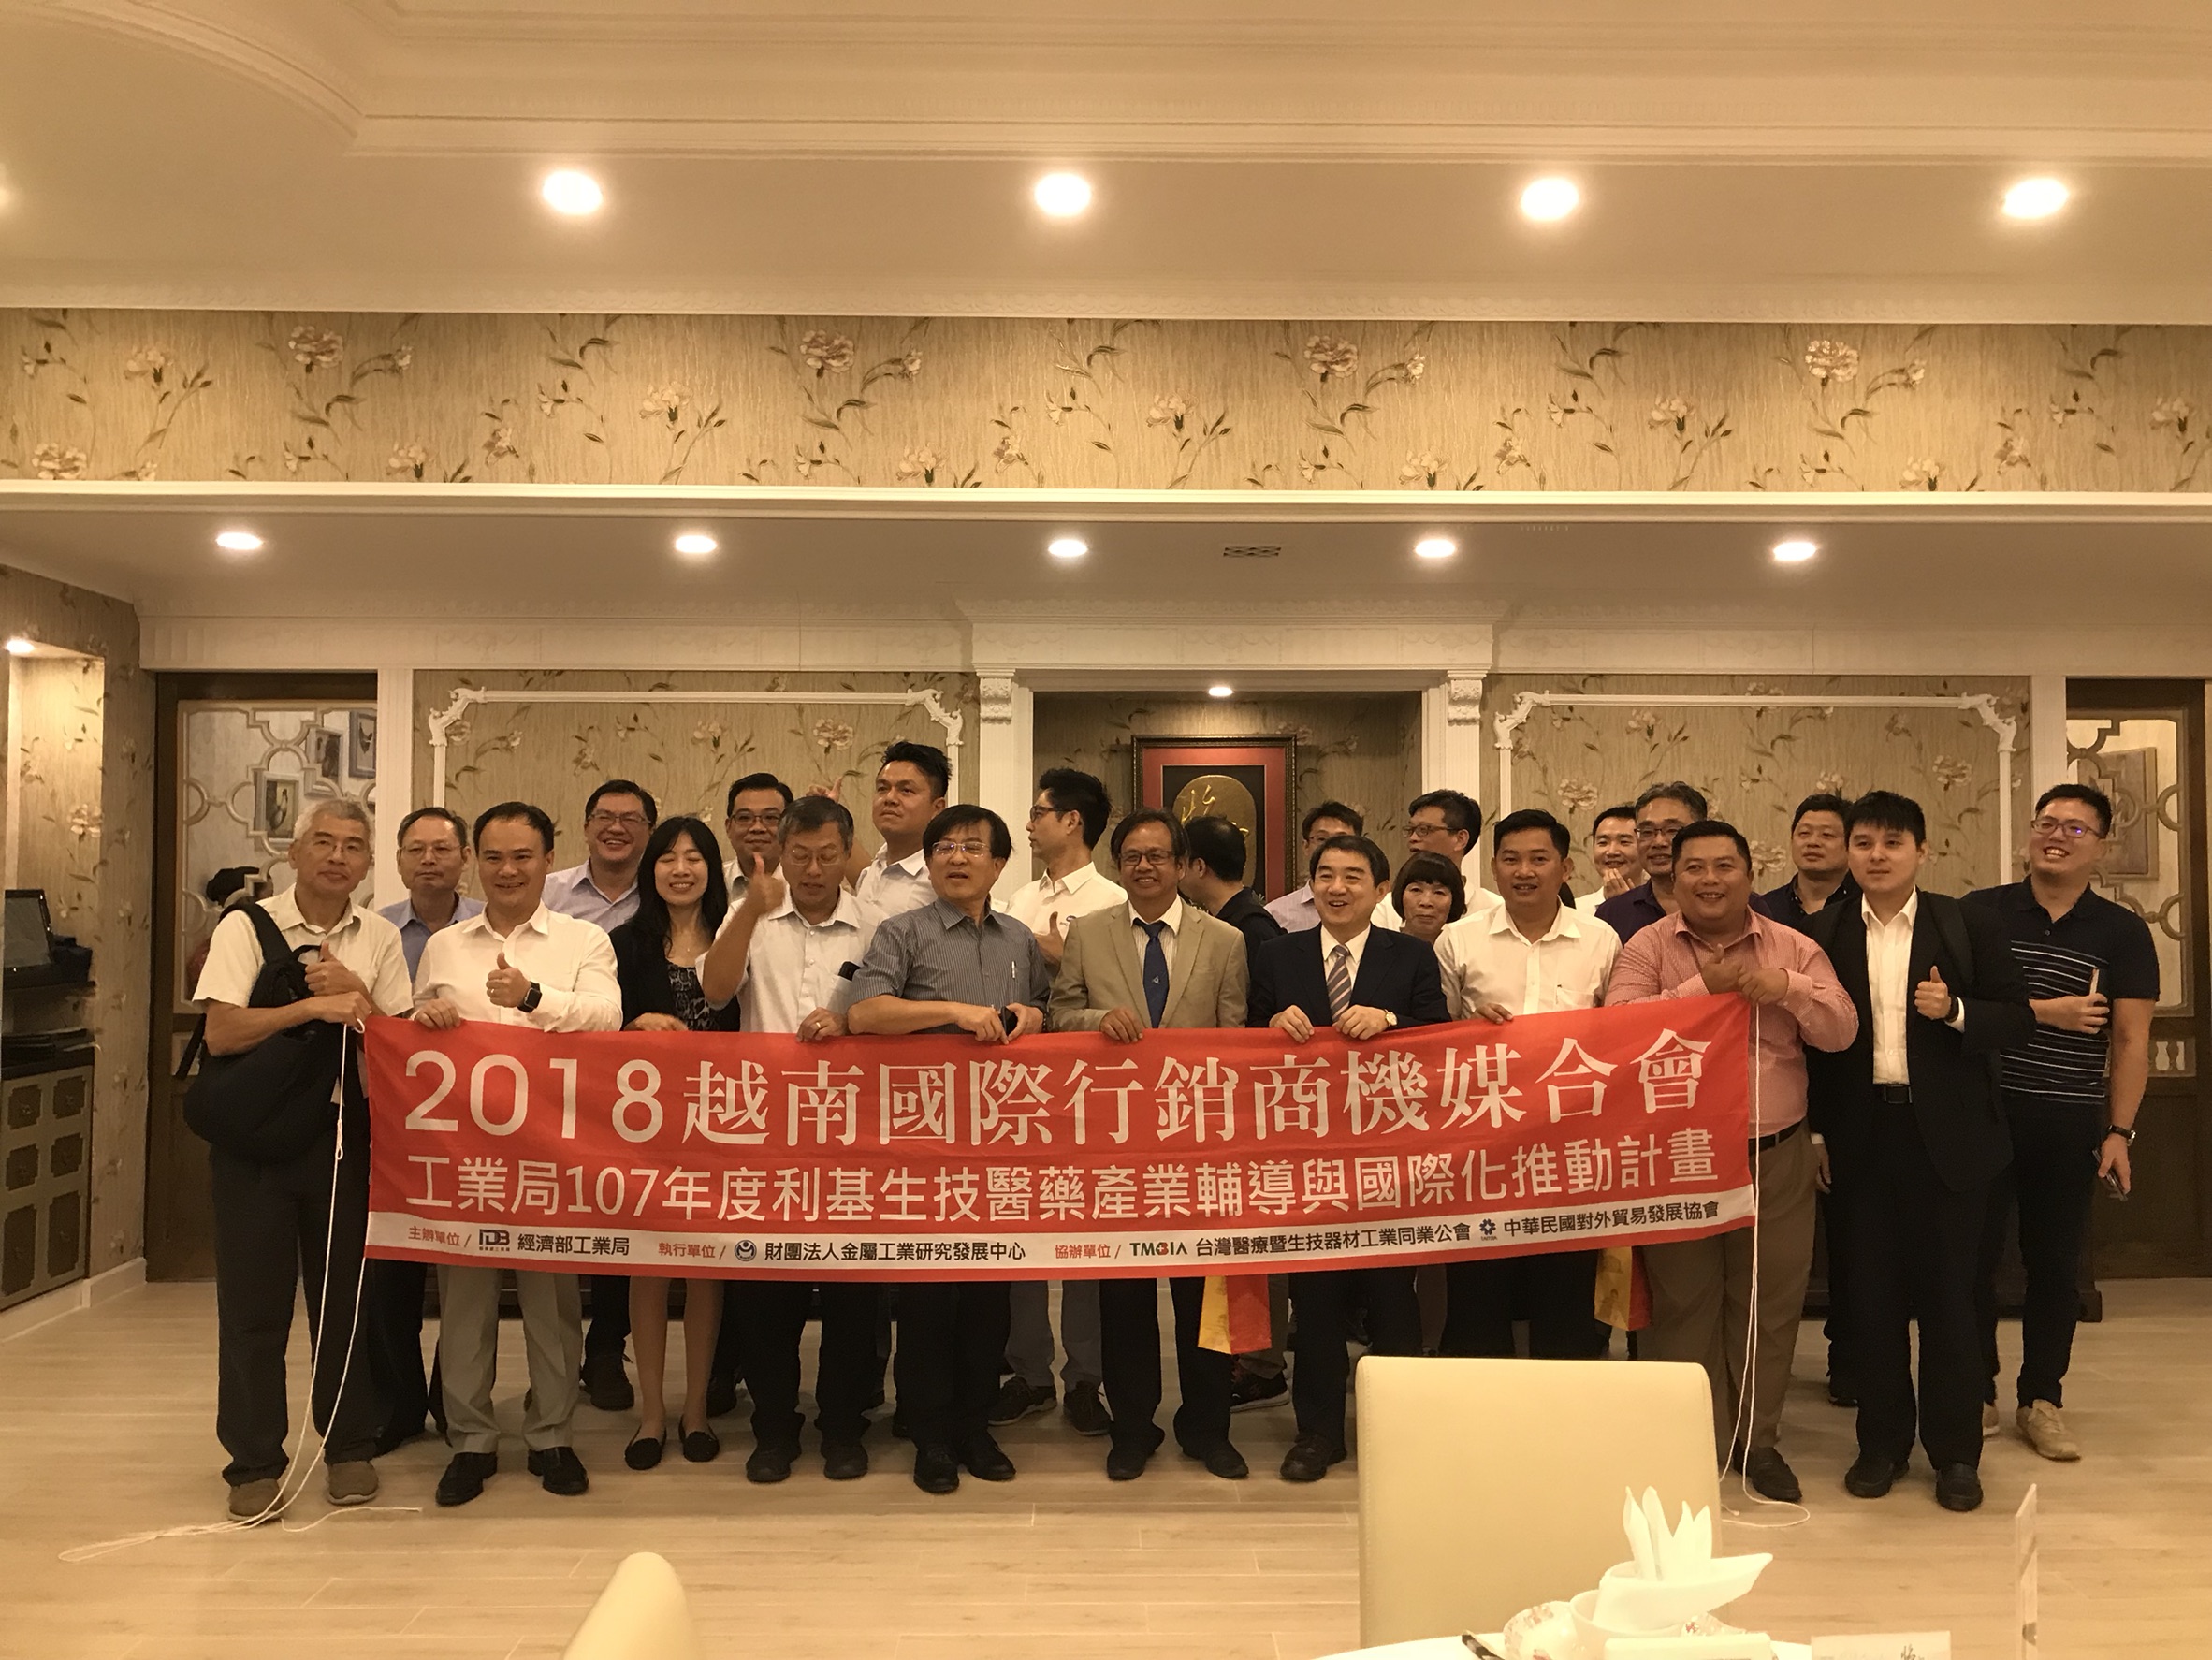 【即時訊息】 2018 越南國際行銷商機媒合會台灣之夜